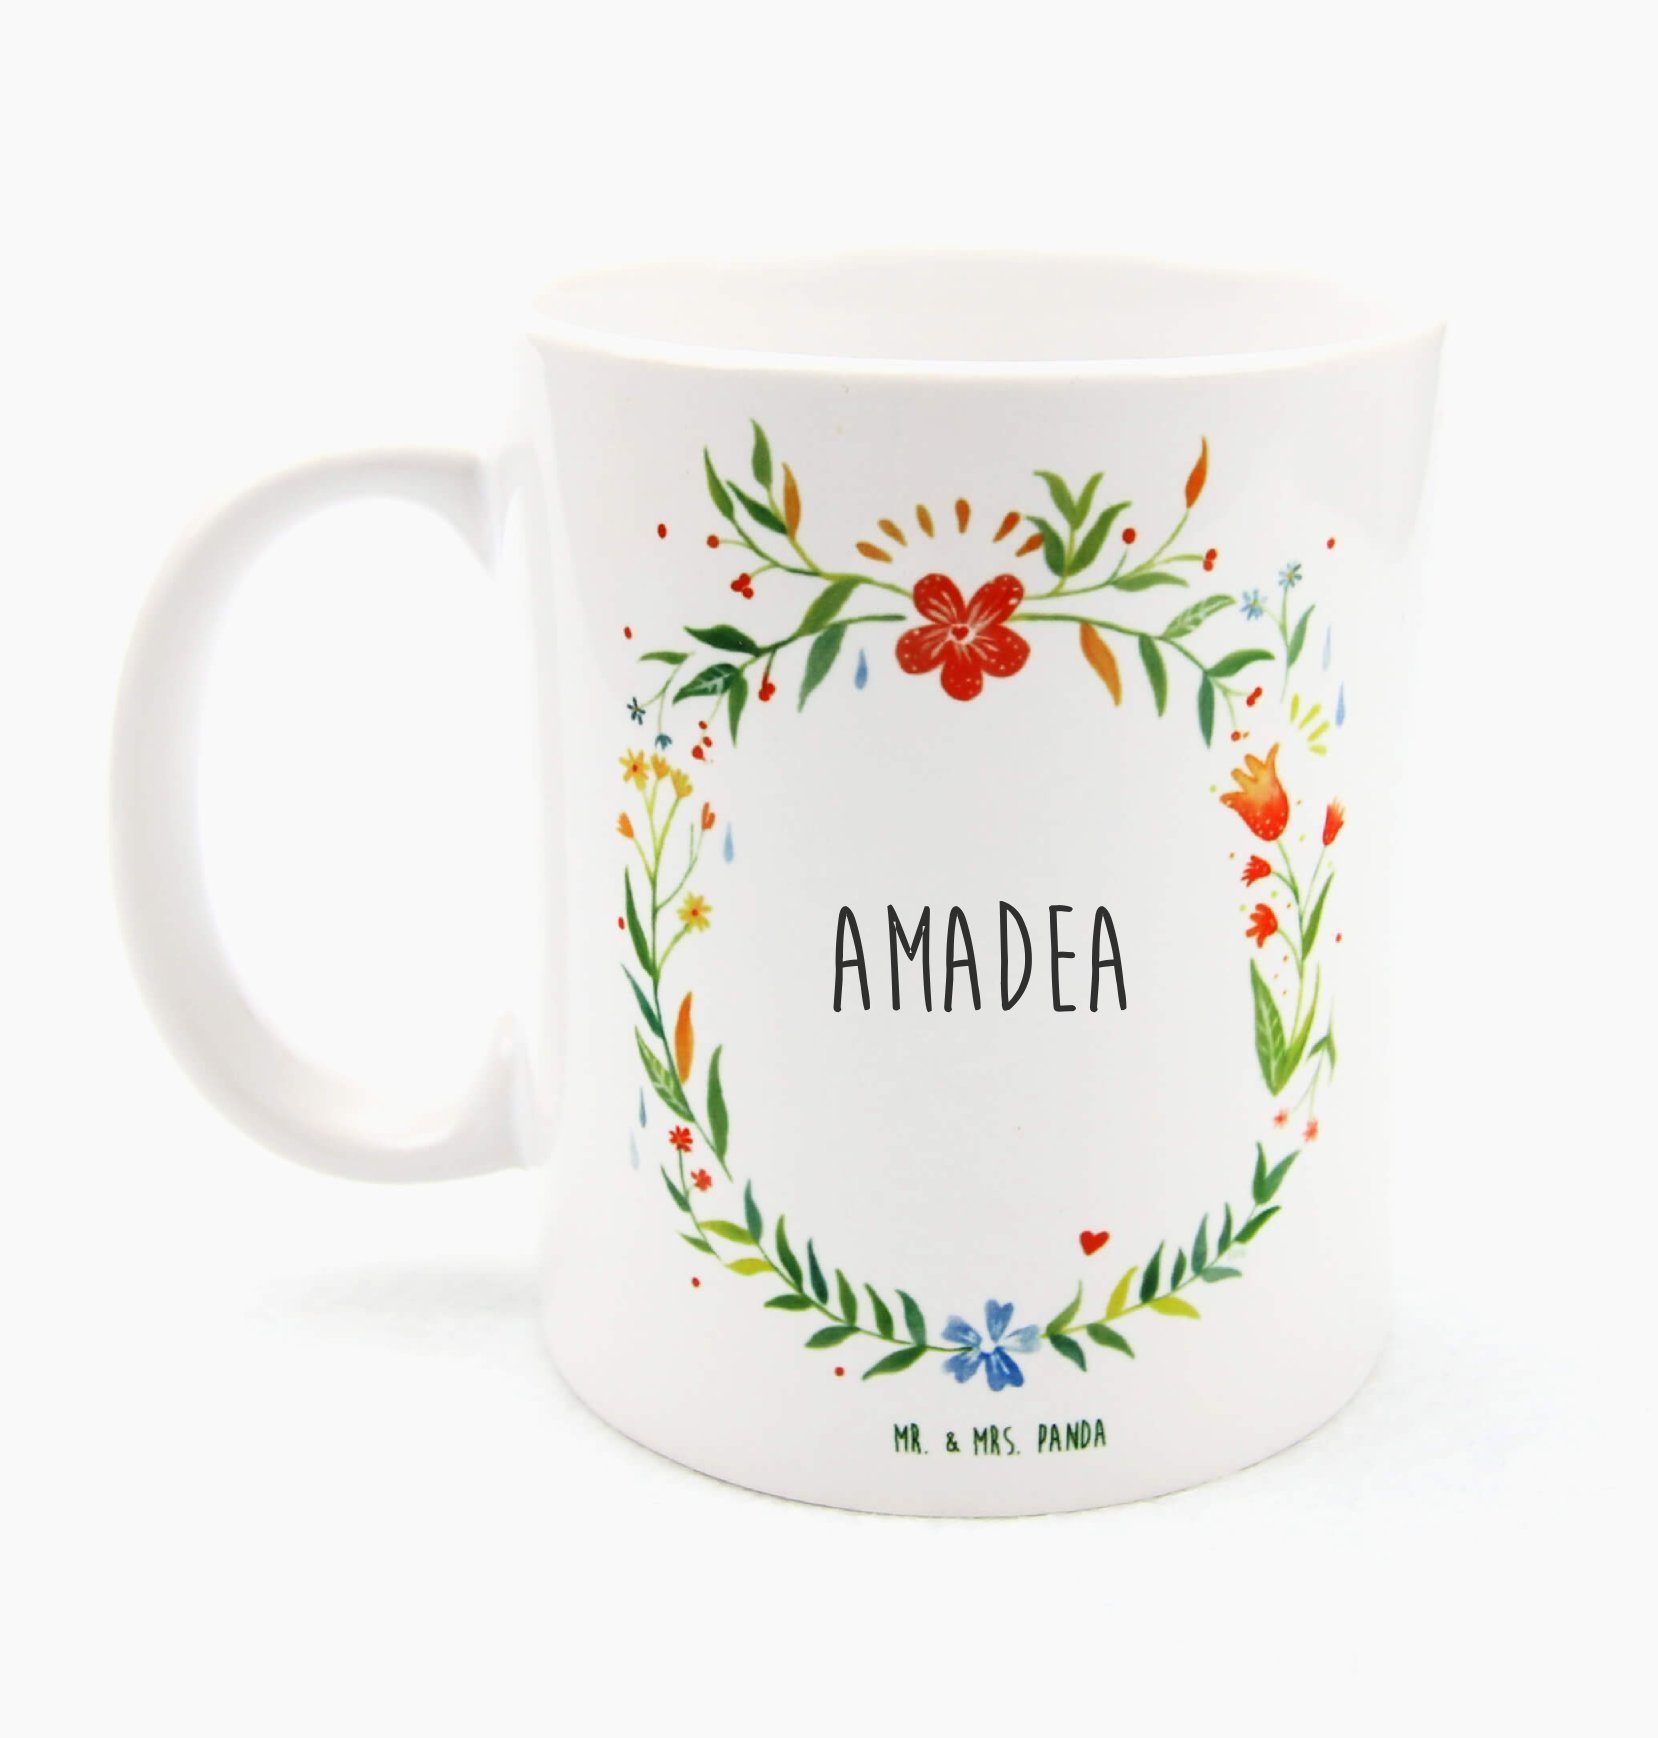 Mr. & Mrs. Panda Tasse Amadea - Geschenk, Tasse Motive, Kaffeebecher, Büro Tasse, Teebecher, Keramik